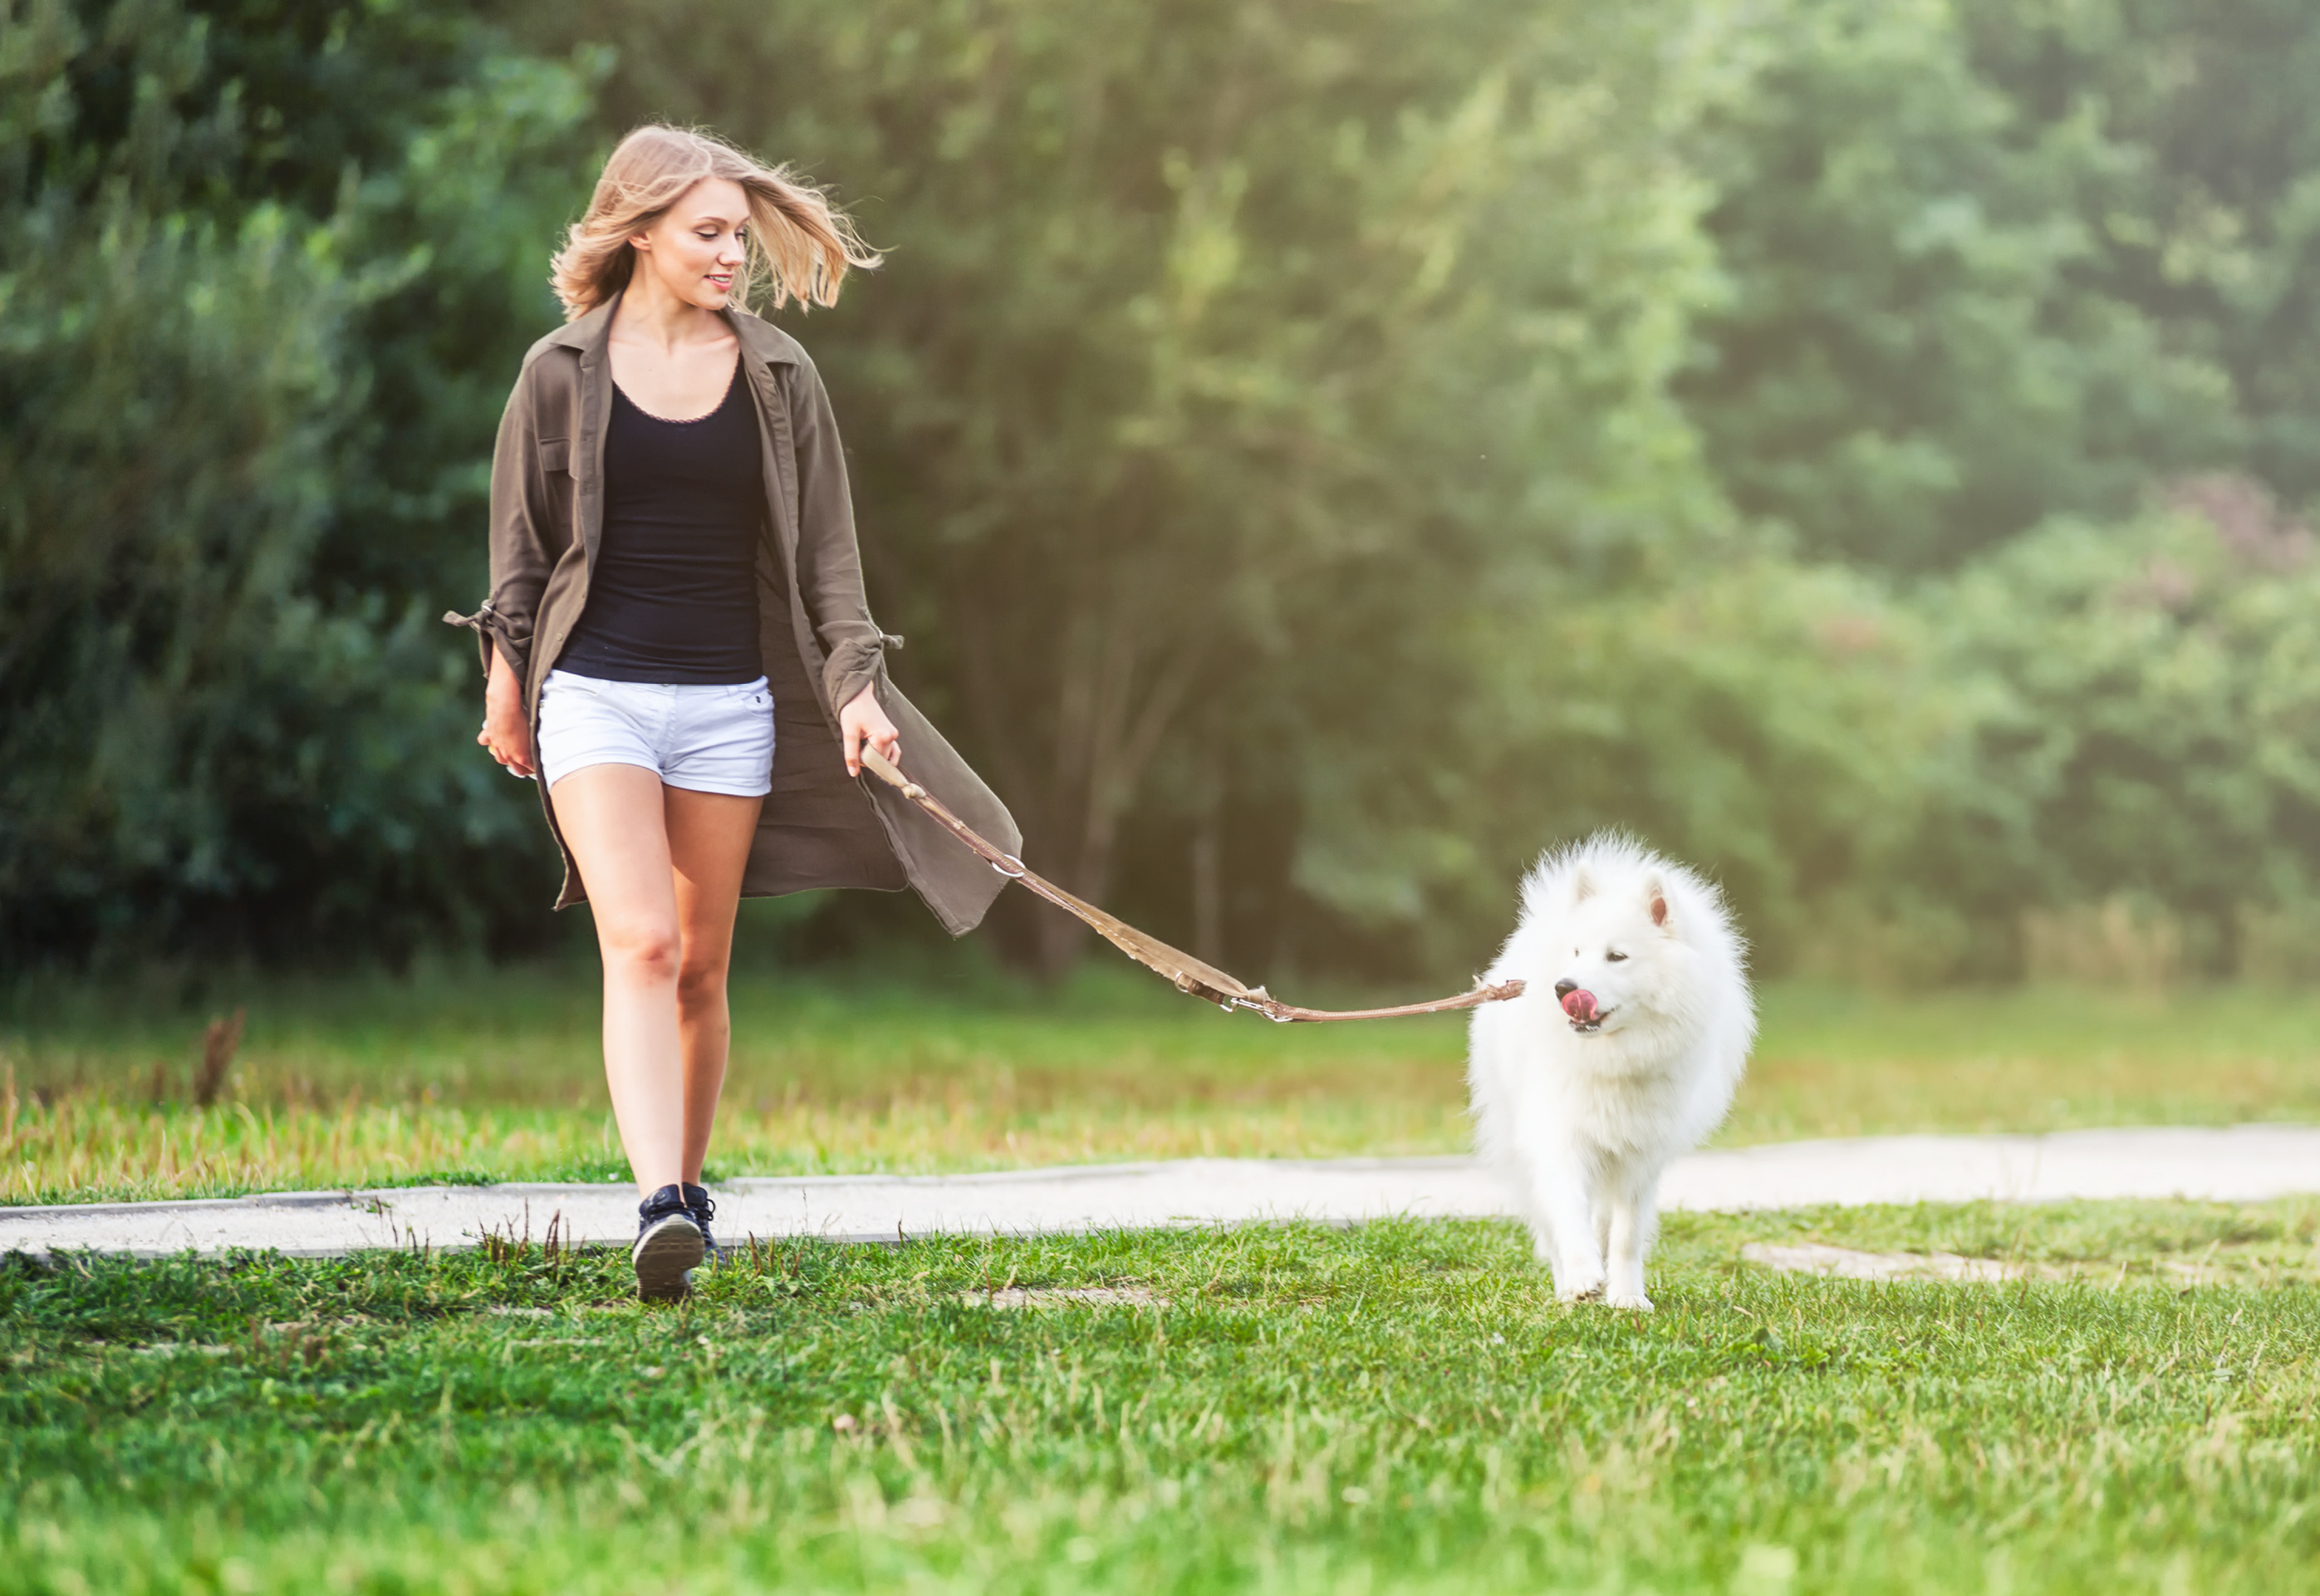 A woman walking her dog through grass